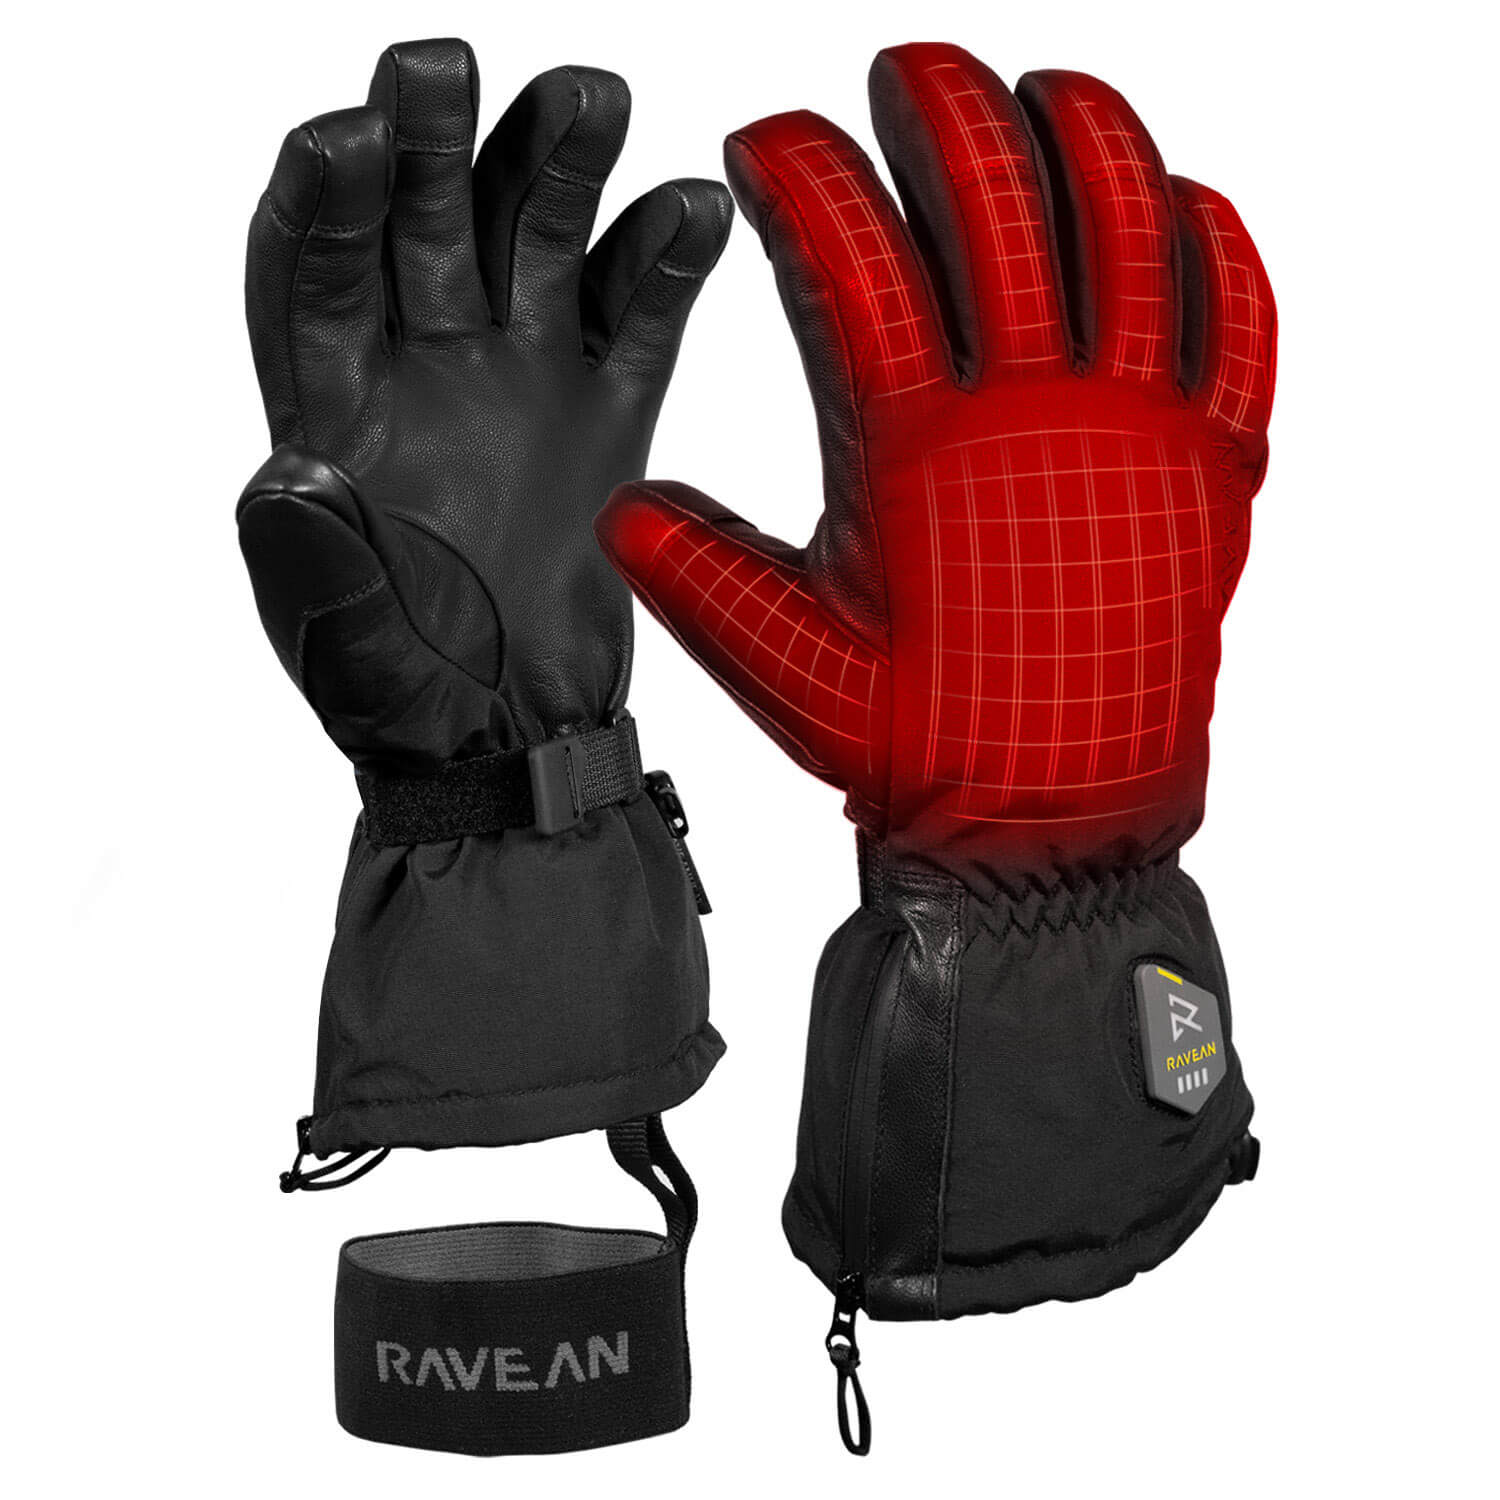 Glove / 9 / LIKE NEW